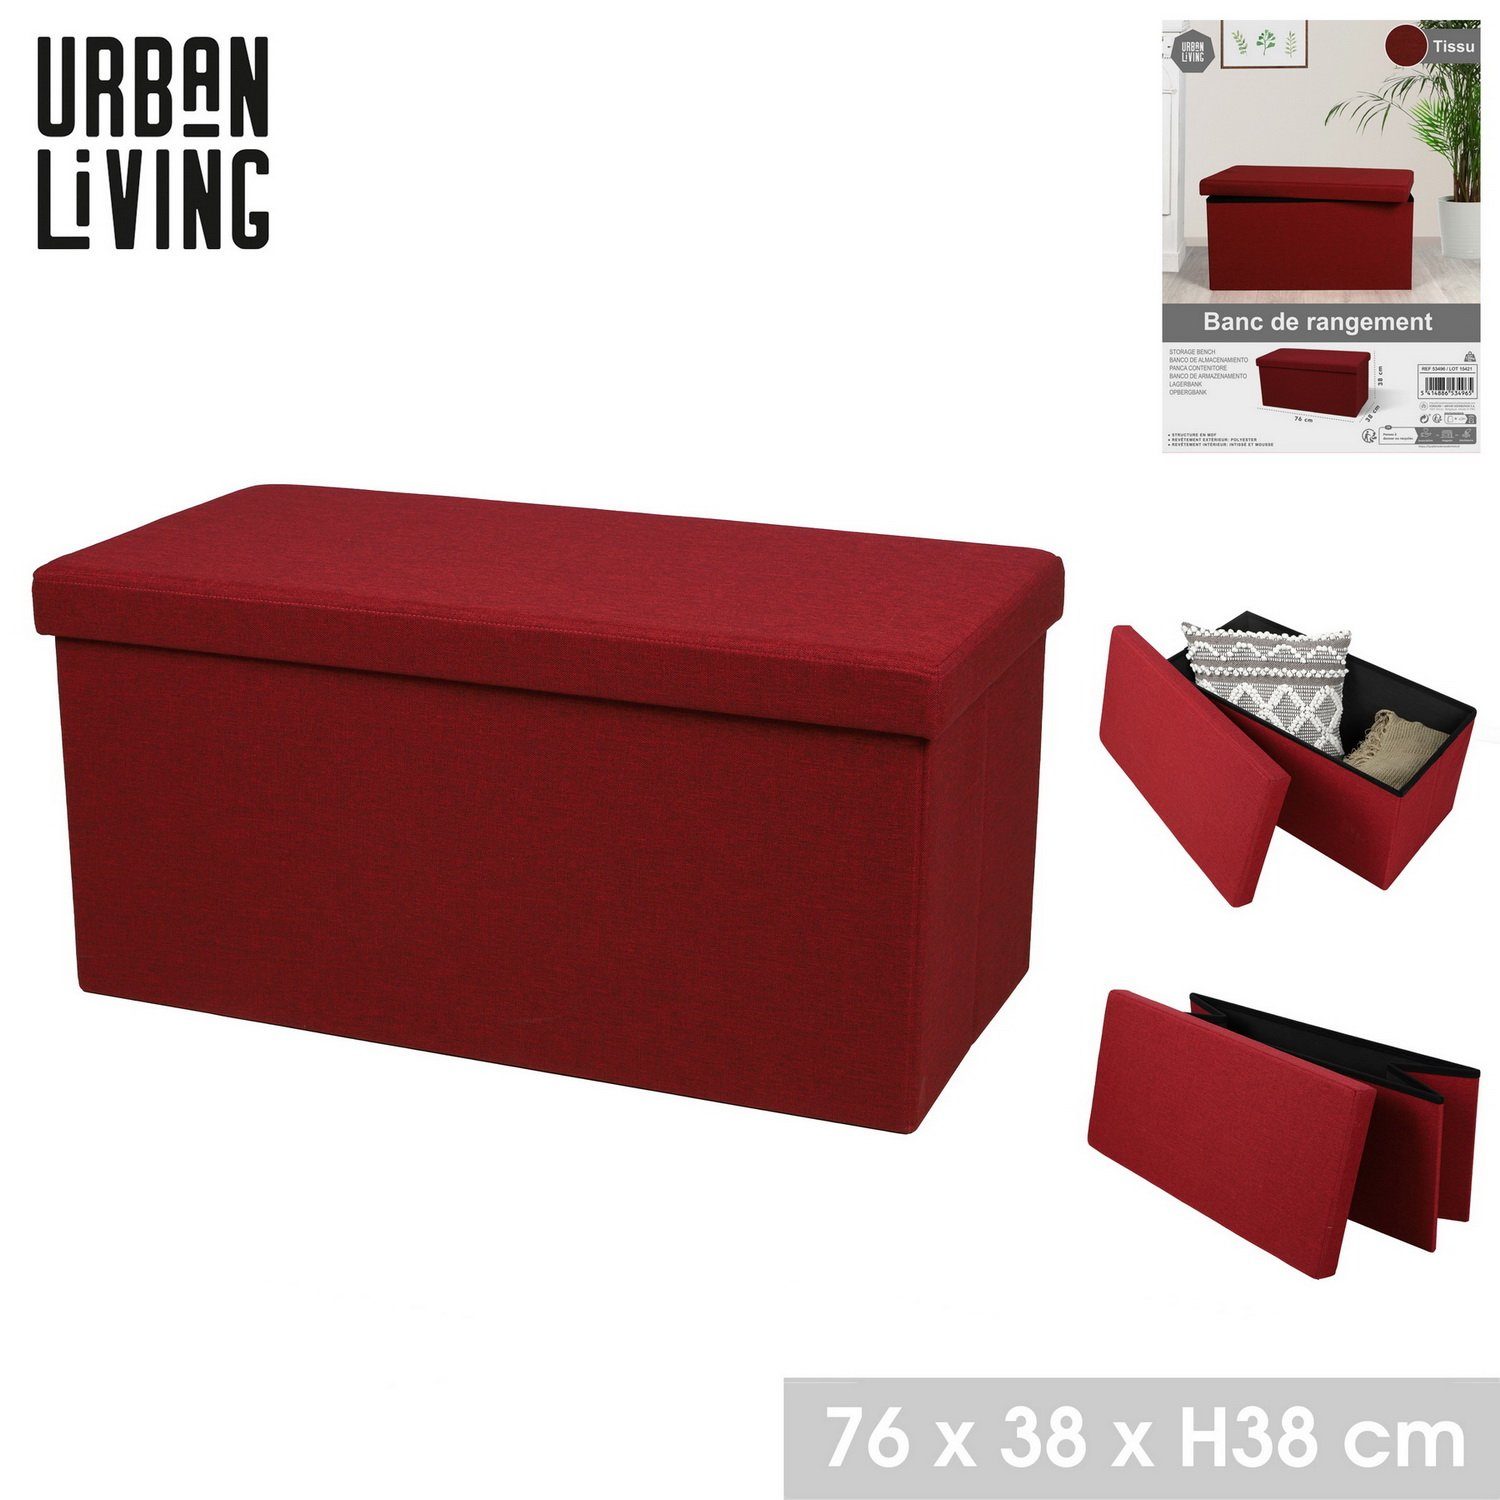 Sitz-Bank, TISSU Living - Sitzhocker bequemer Sitzfläche abnehmbare Sitztruhe Sitzbank mit rot Sitz Urban Aufbewahrungsbox